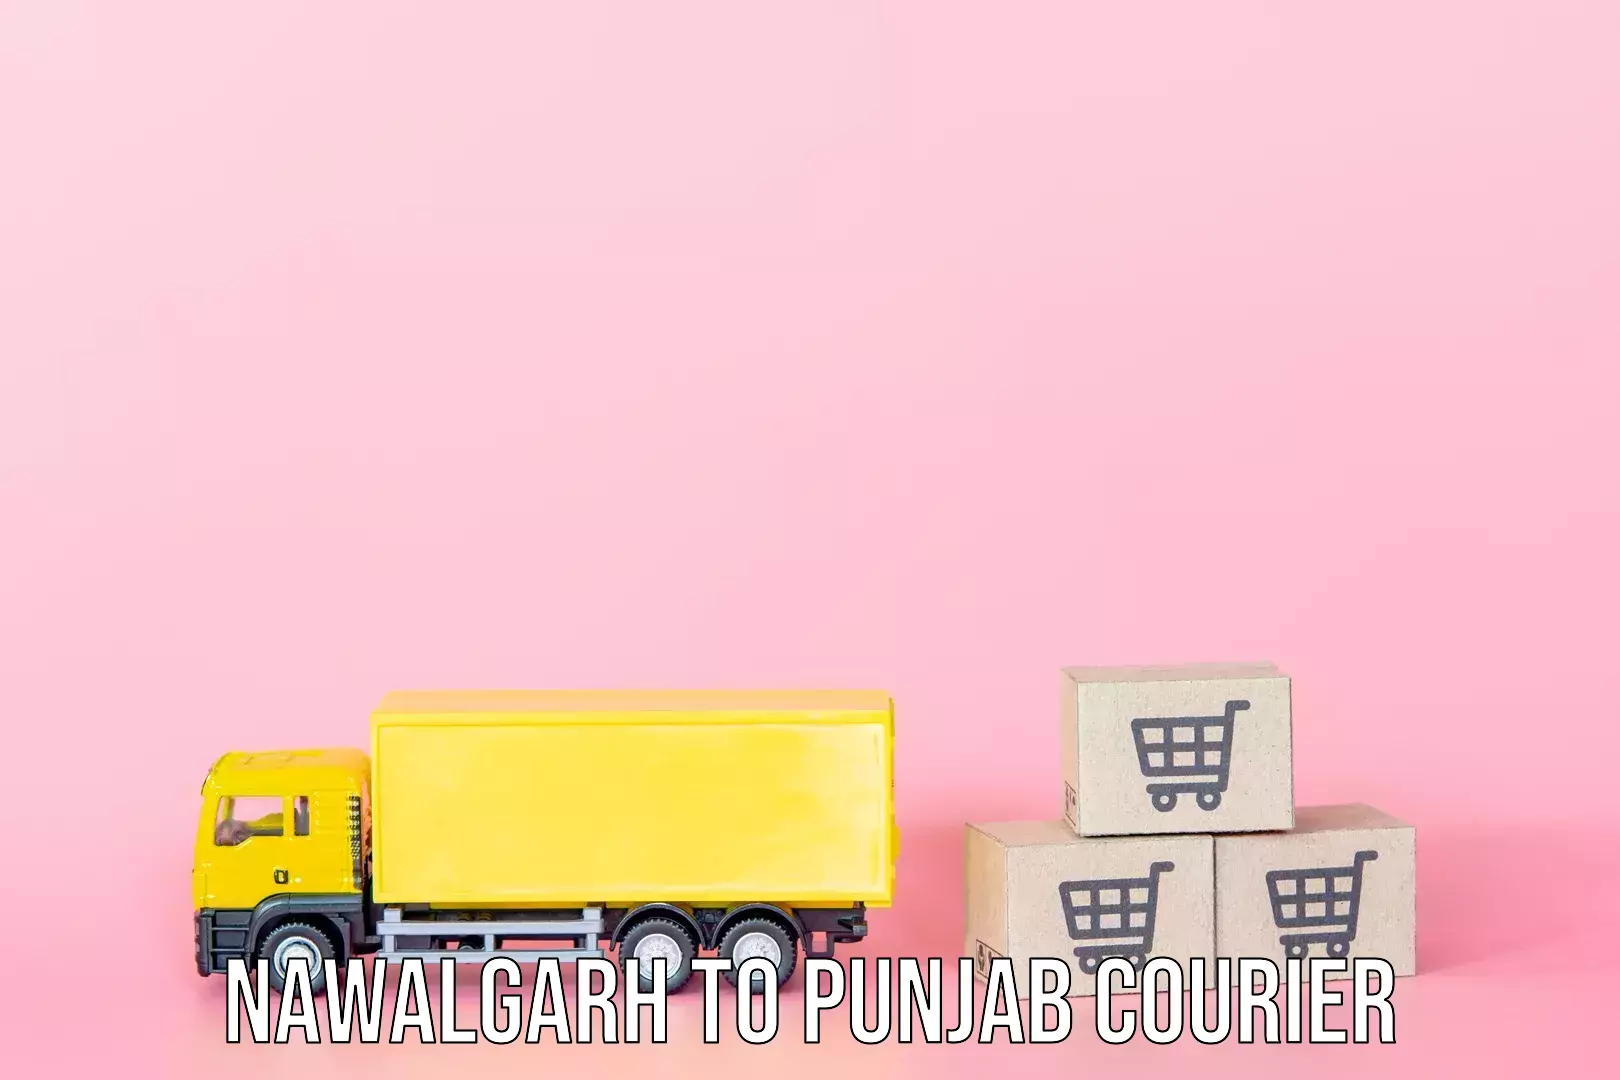 Luggage shipping service Nawalgarh to Central University of Punjab Bathinda